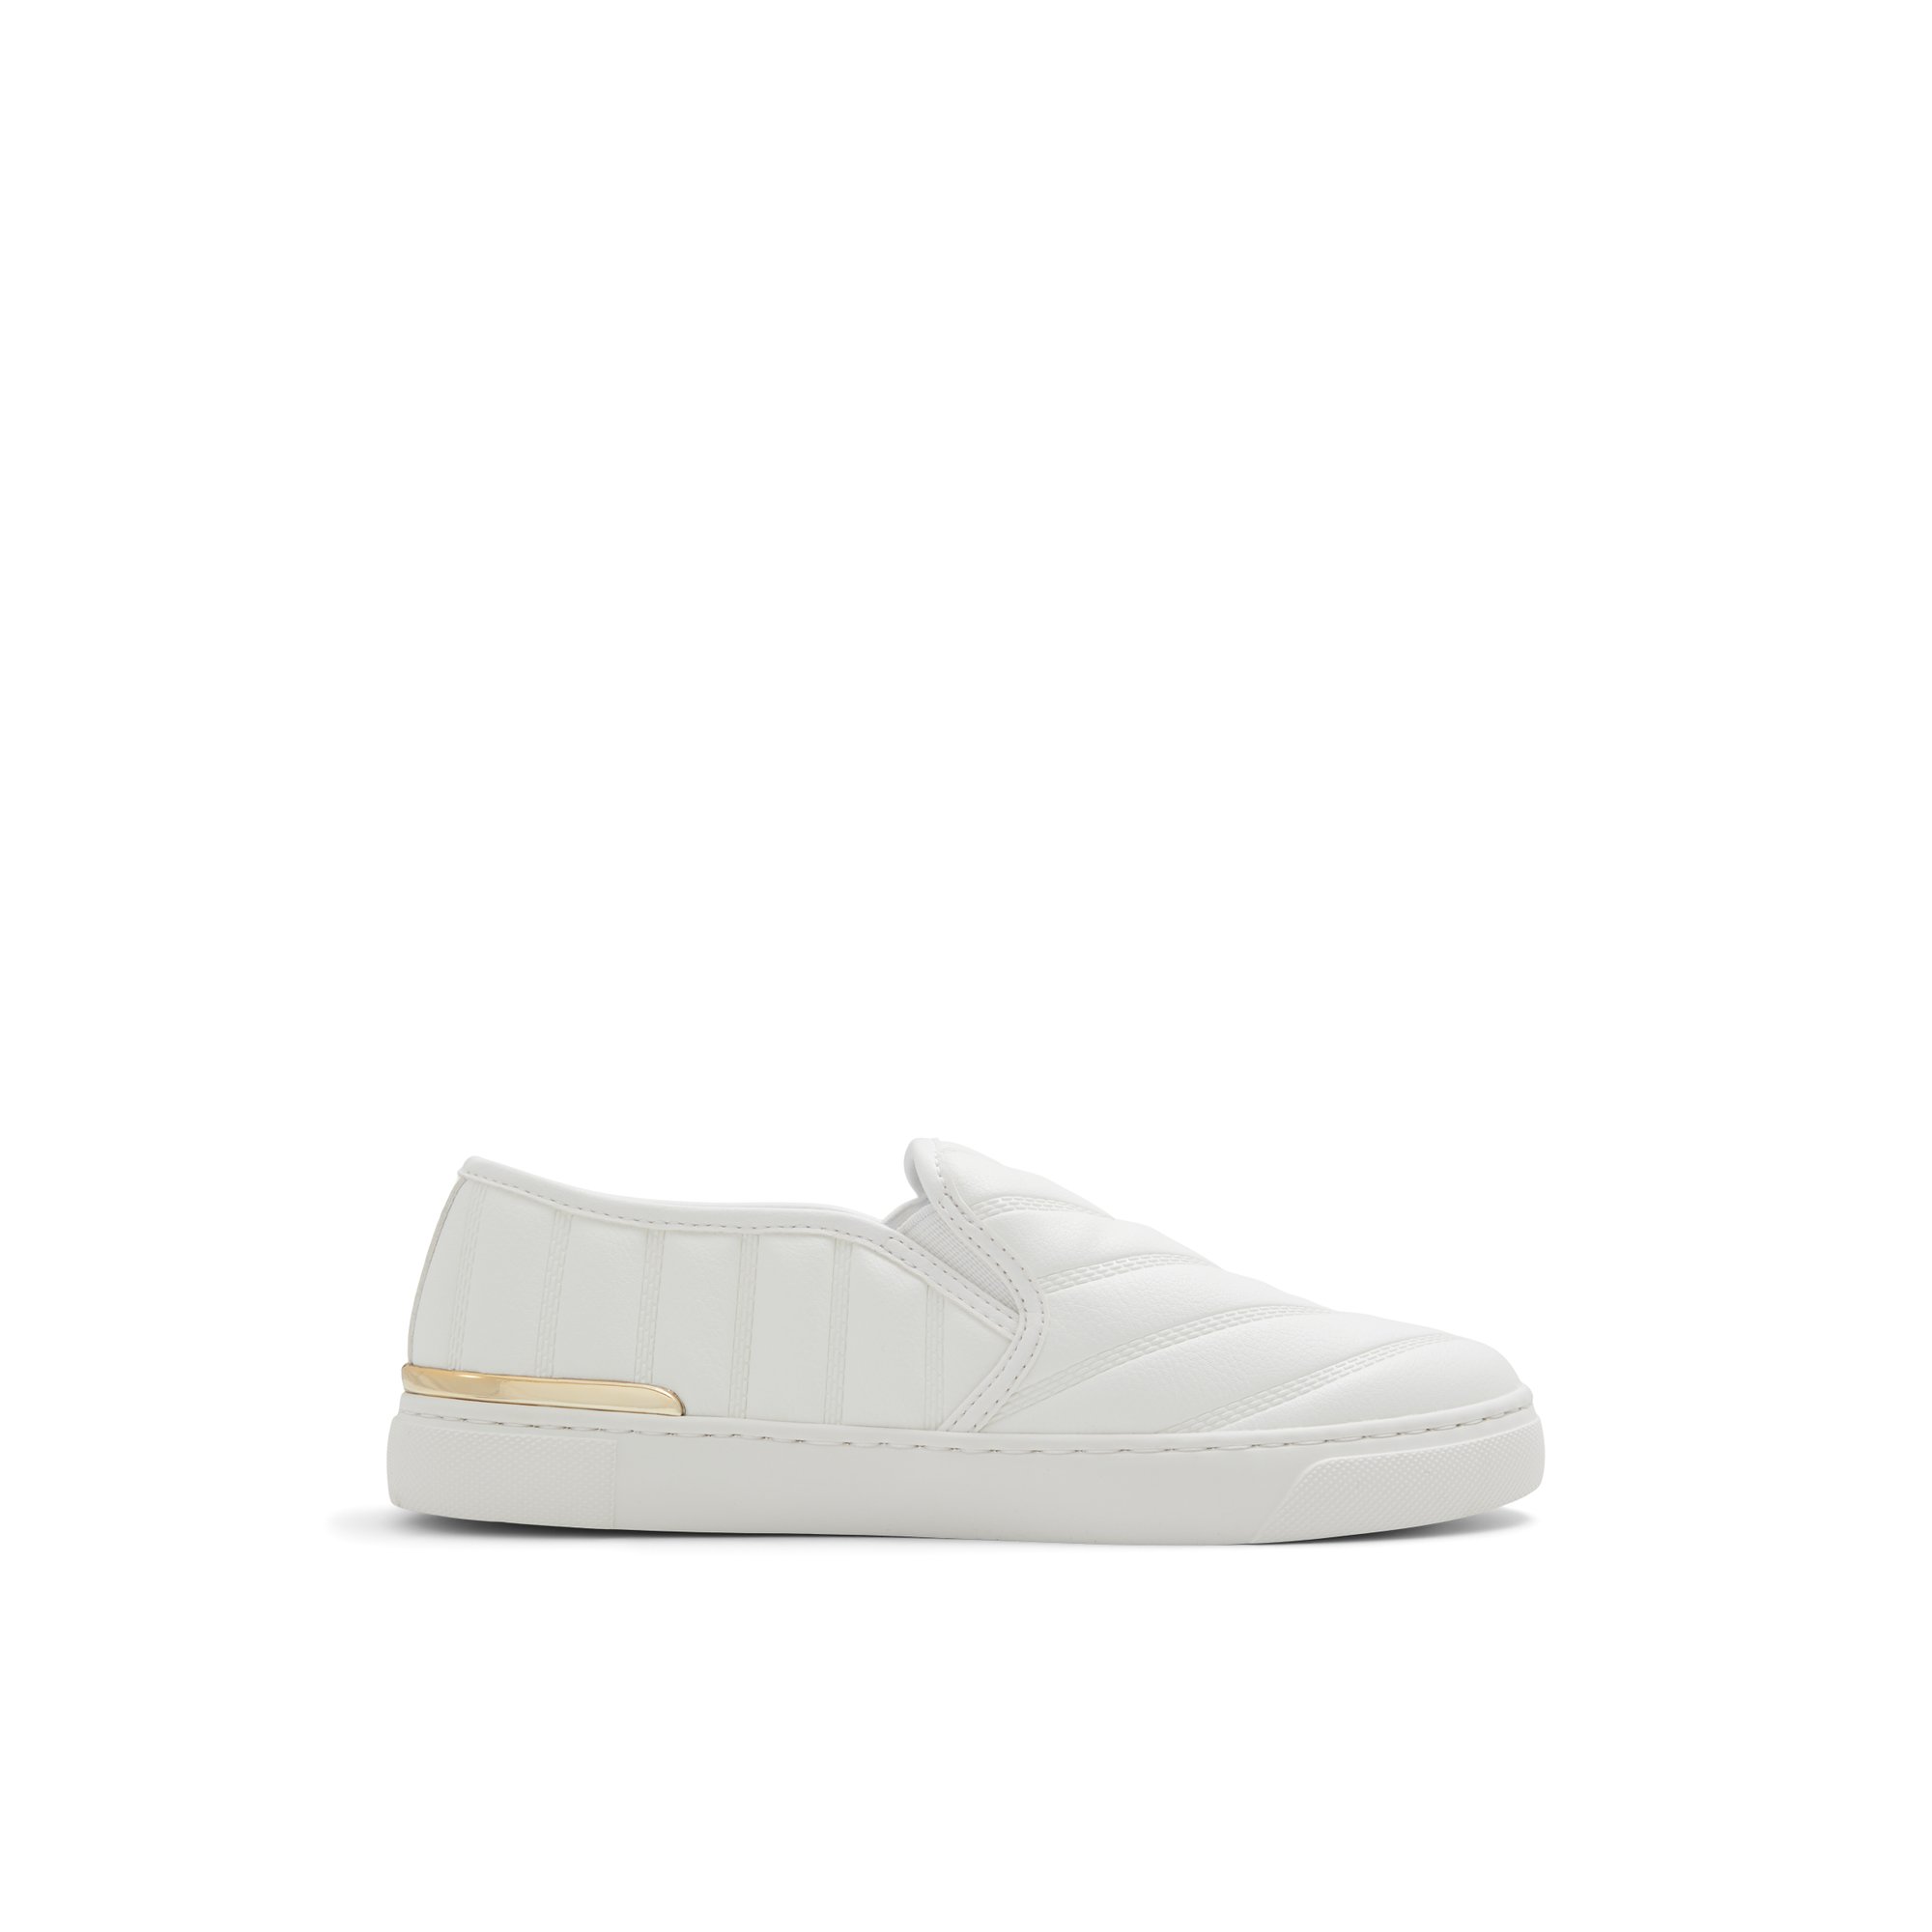 ALDO Crendann - Women's Sneakers Slip on - White